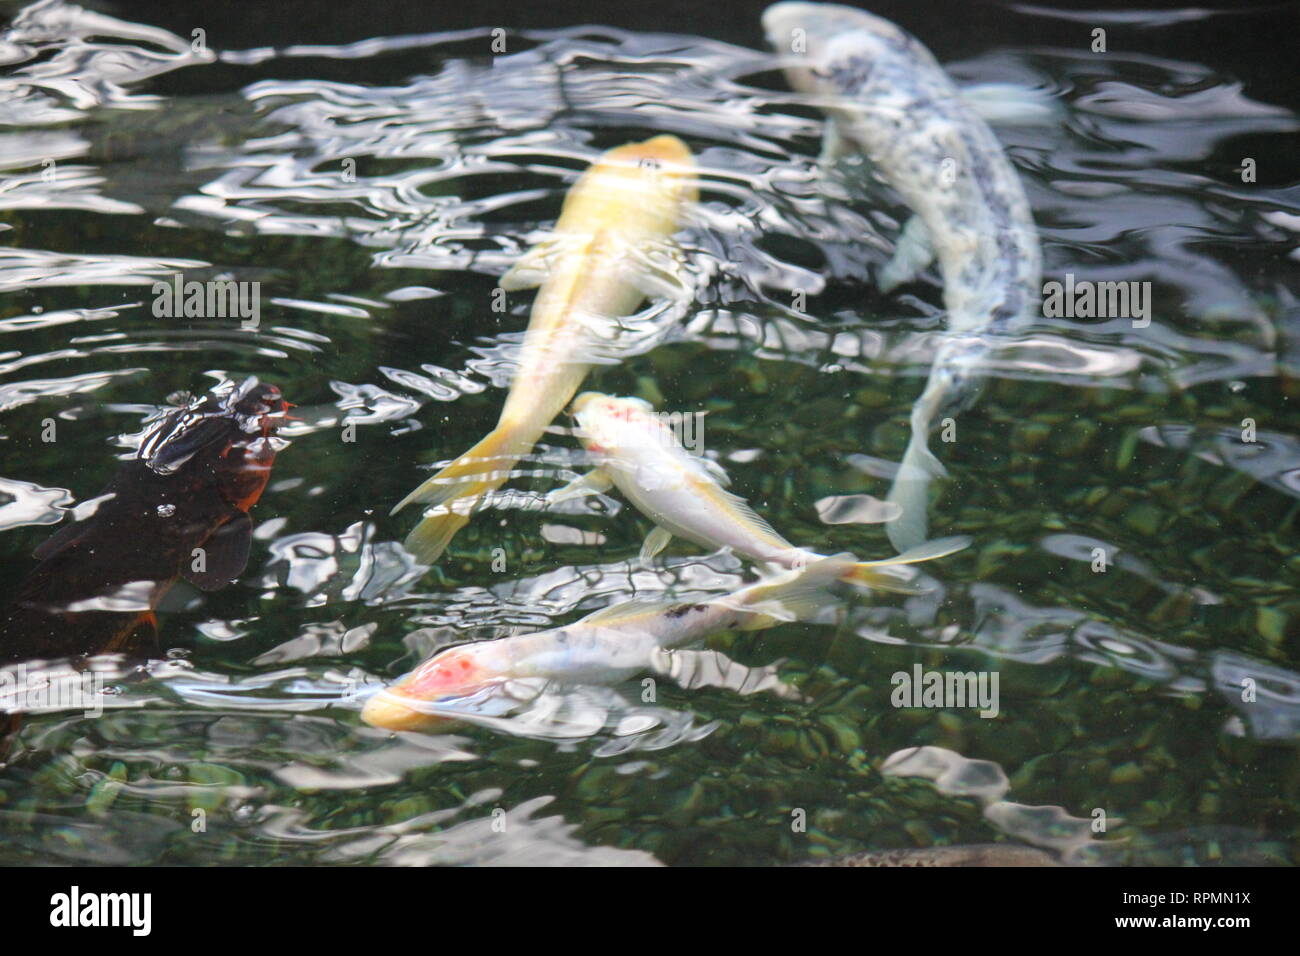 Flawless, stunning large koi nishikigoi, fish swimming around the pond. Stock Photo